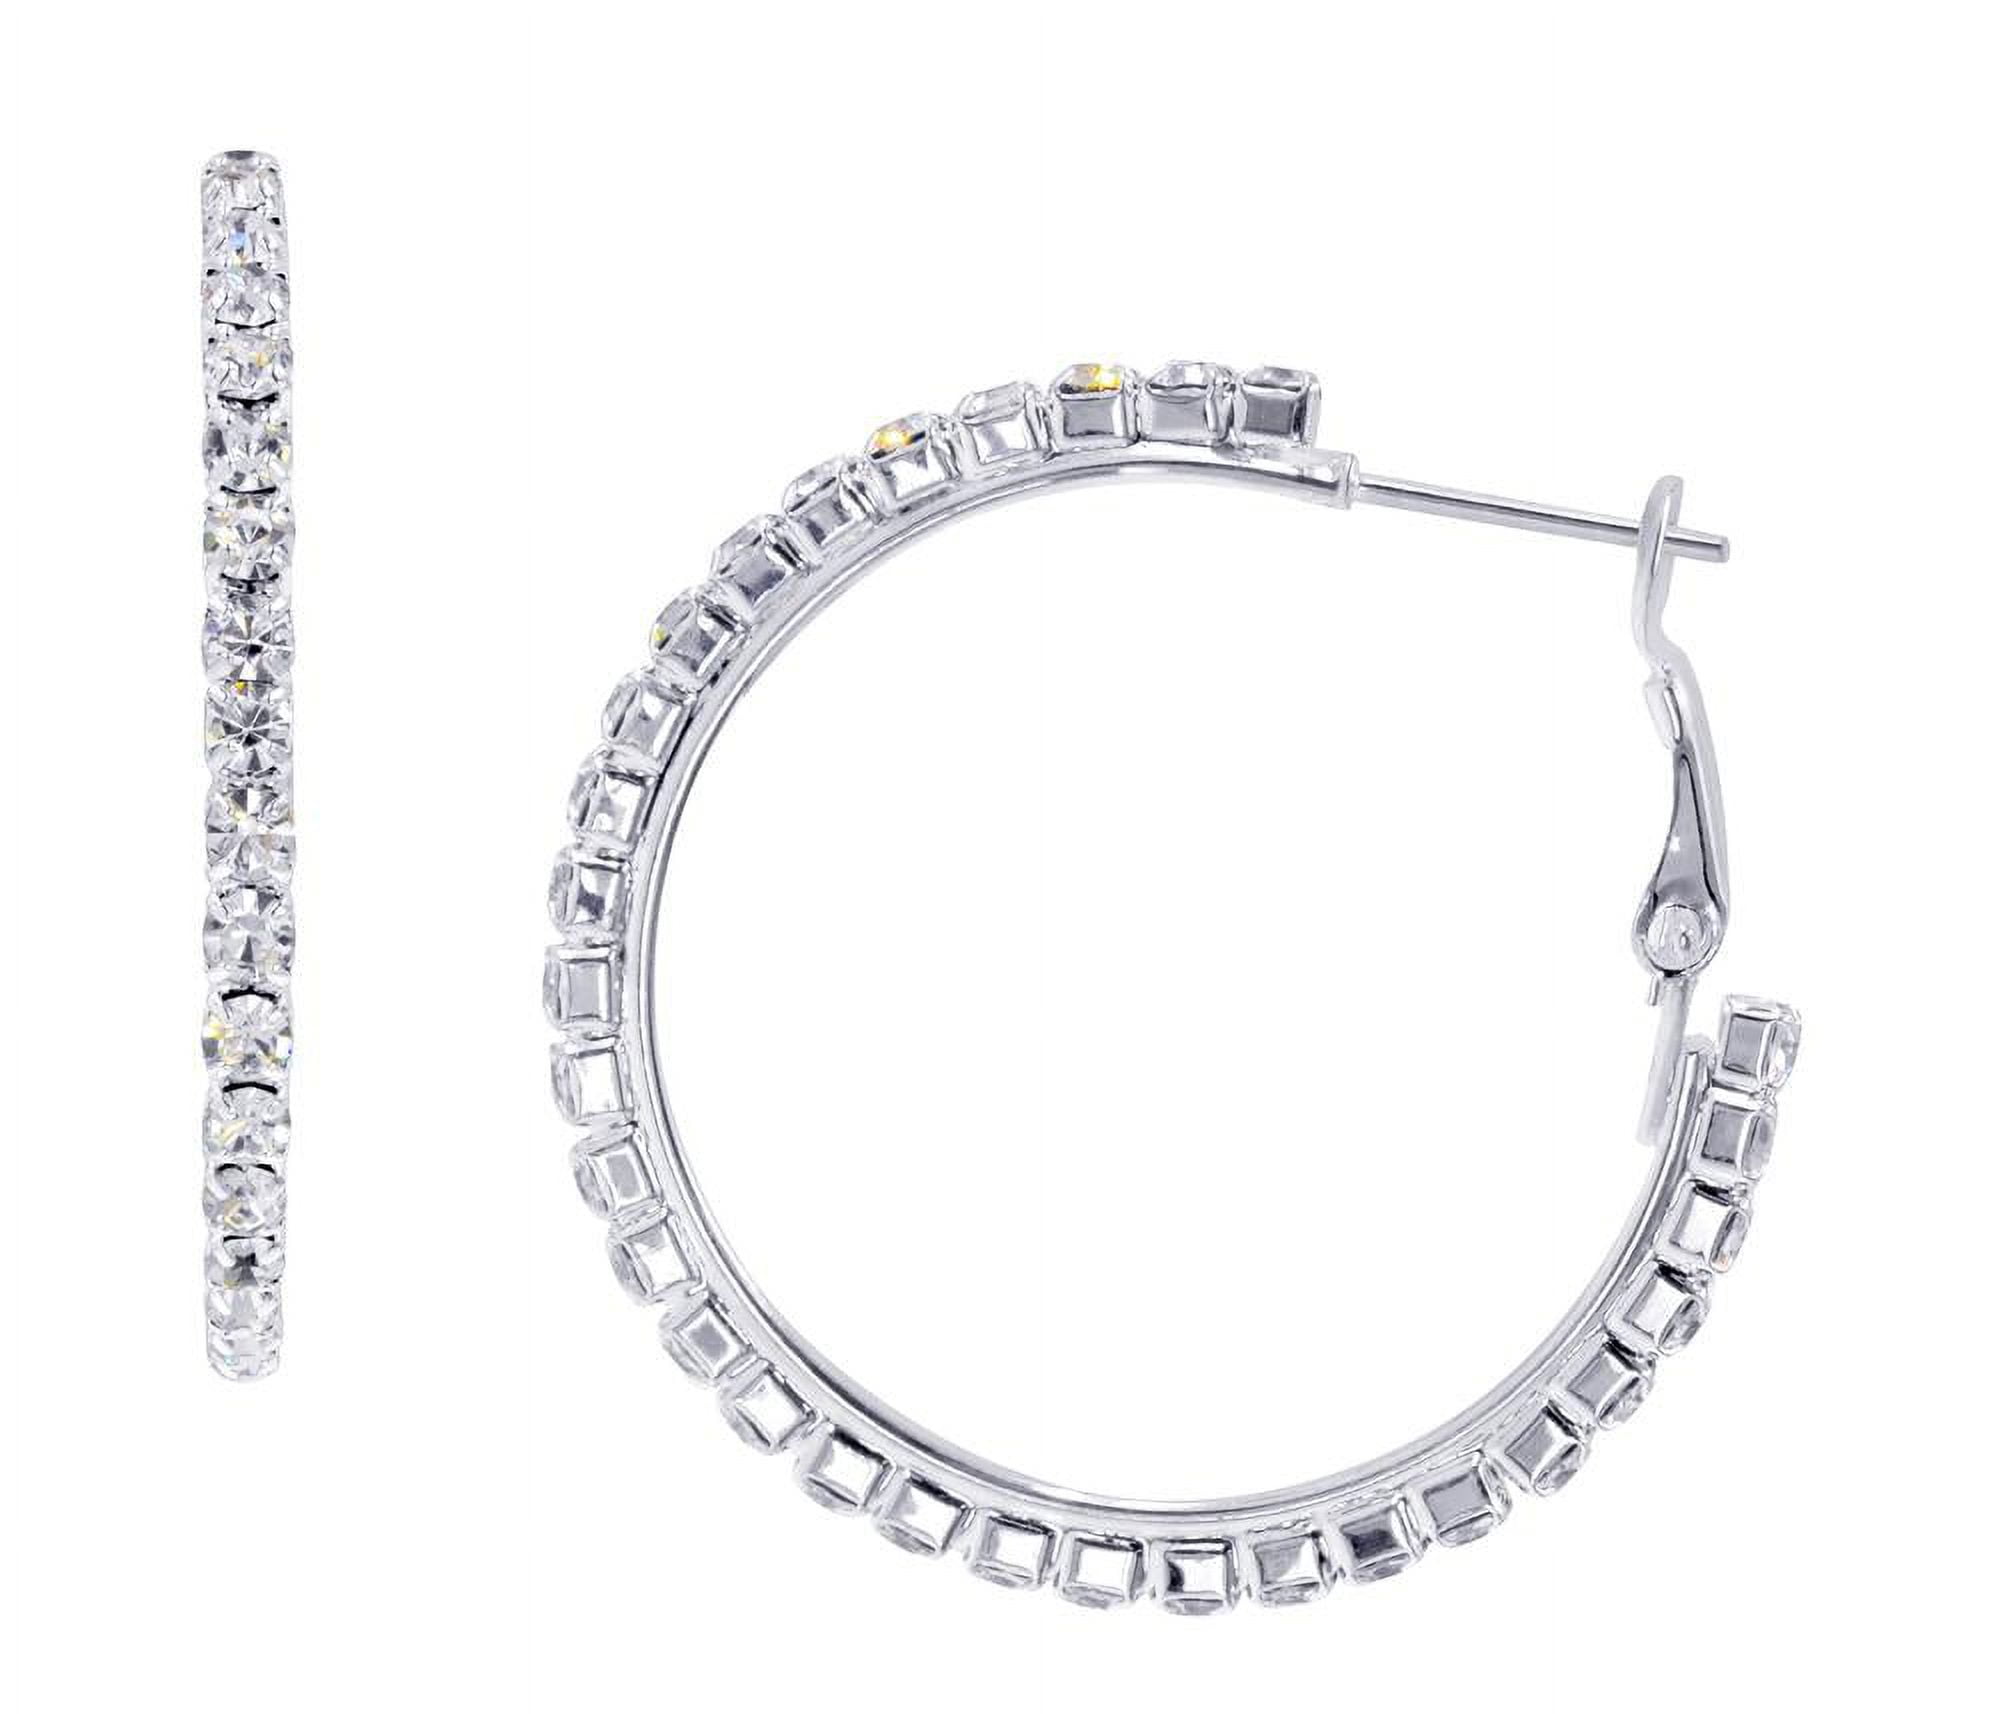 Rhinestone hoop earrings - Silver-coloured - Ladies | H&M IN